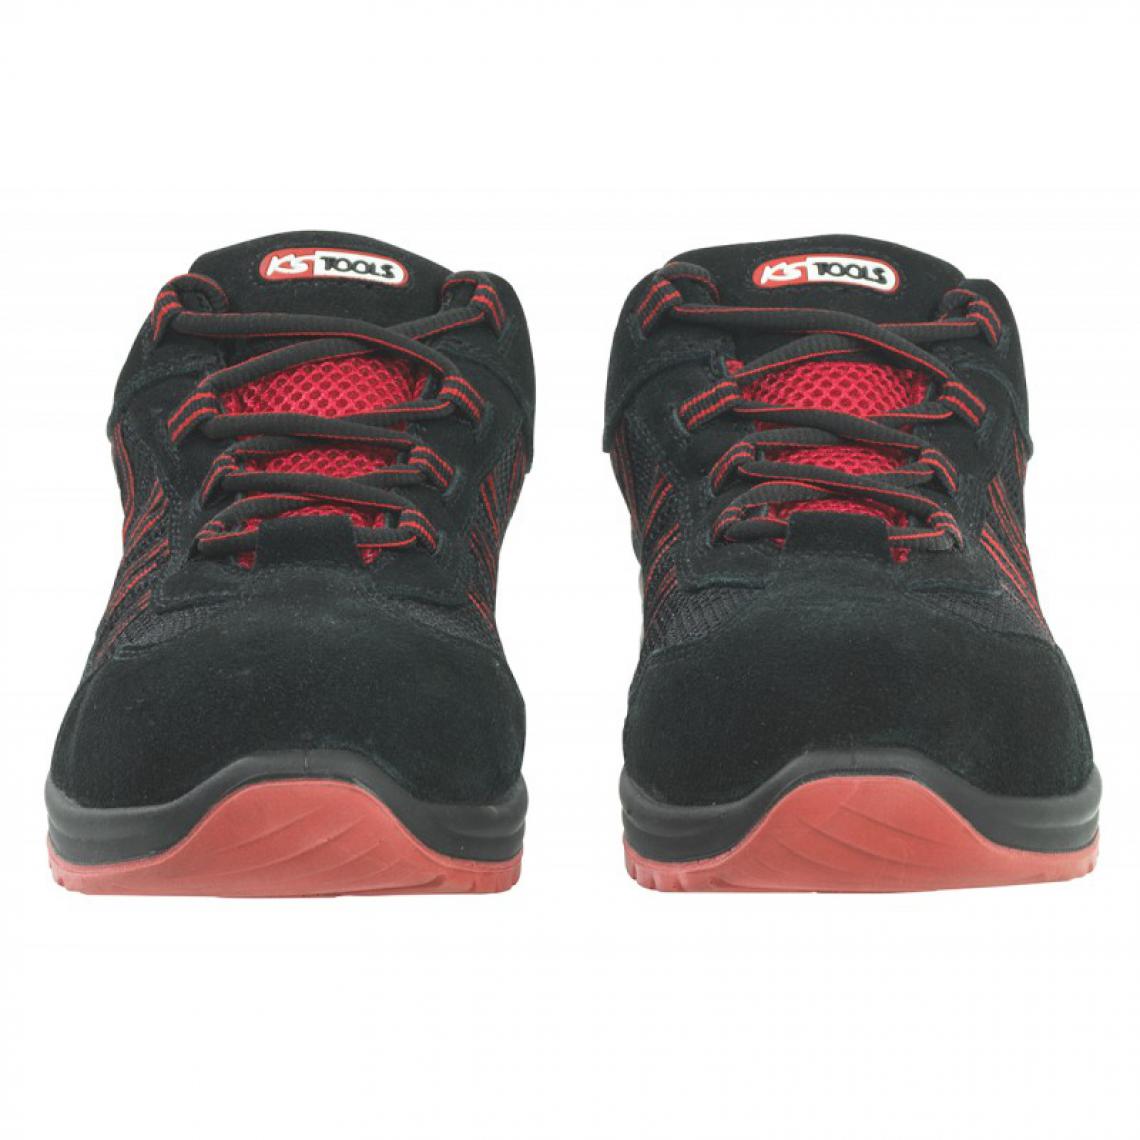 Kstools - Chaussures de sécurité KSTOOLS Couleur noire rouge taille 37 - Equipement de Protection Individuelle